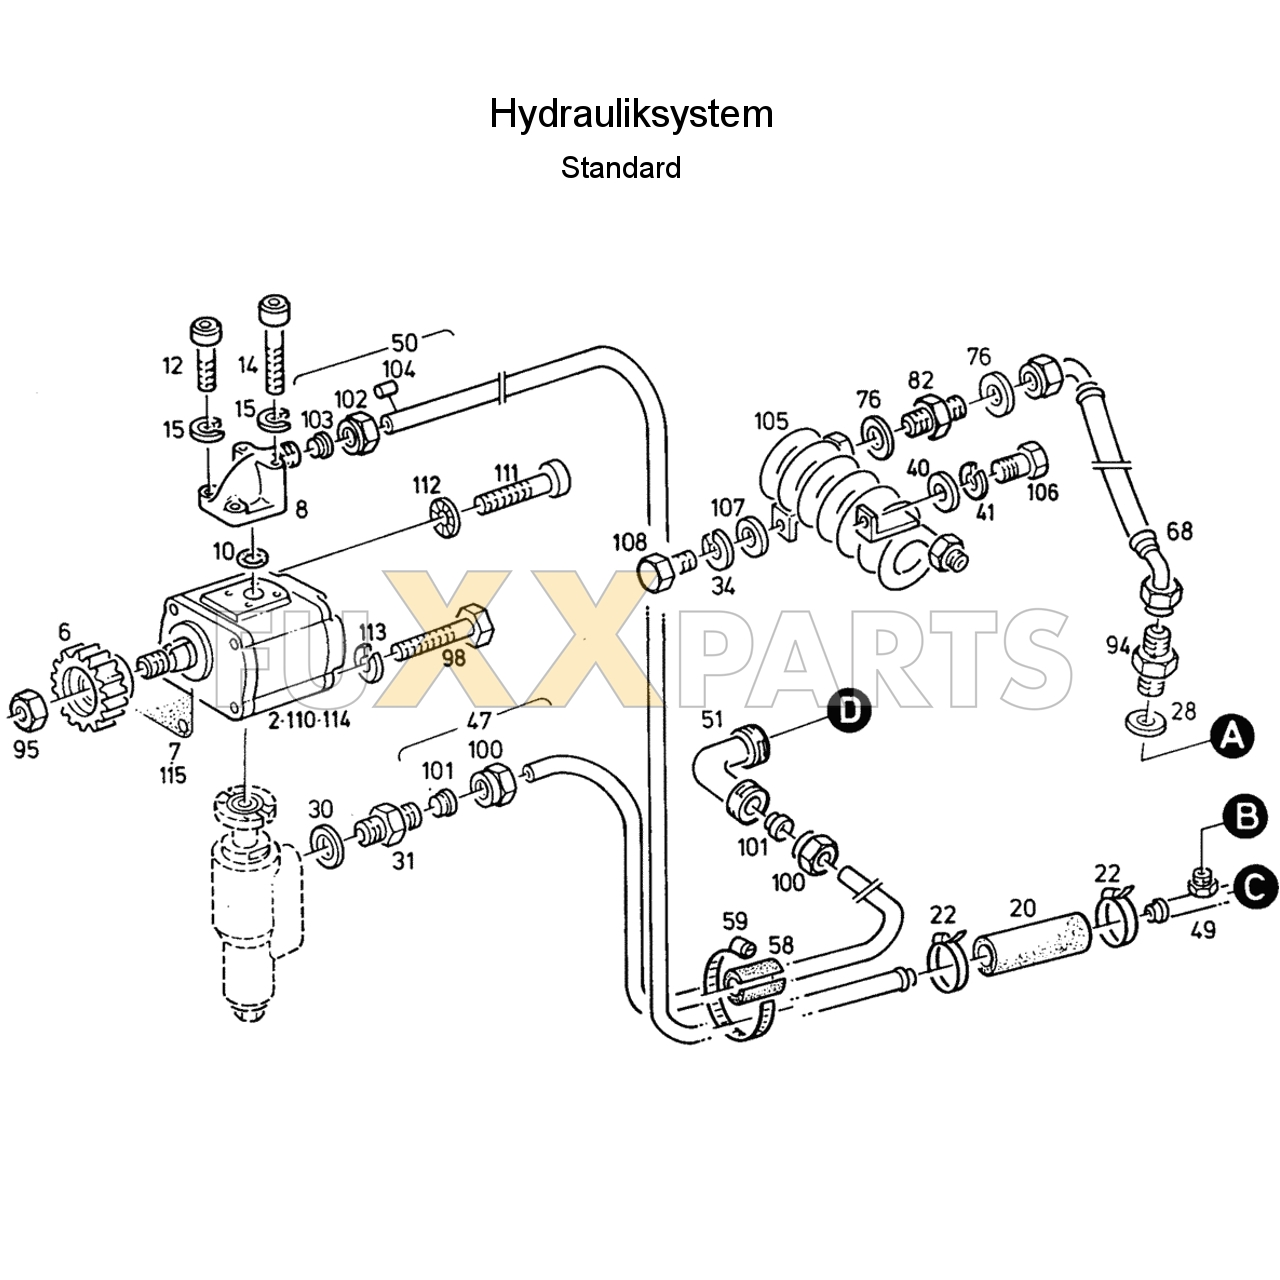 D 7207 C Hydrauliksystem Standard 1